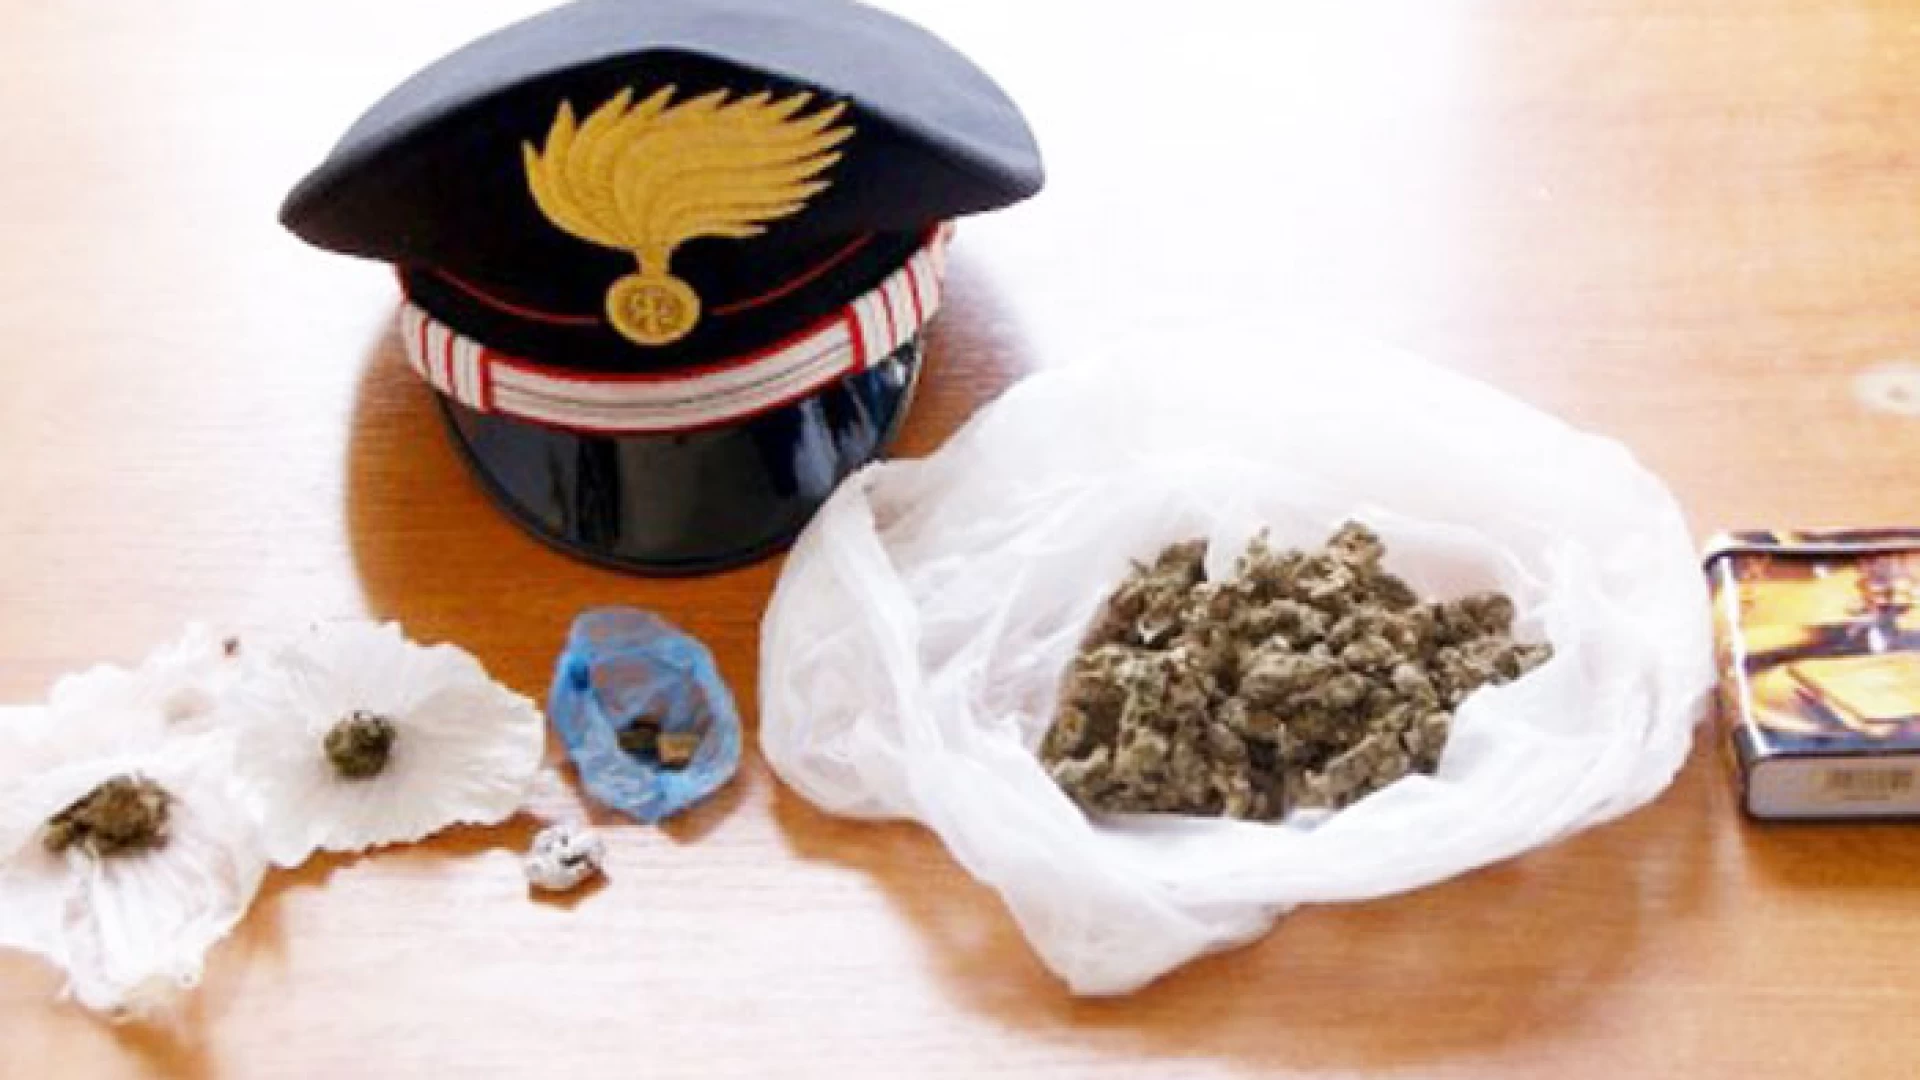 Isernia: la droga nascosta nella busta di patatine. I Carabinieri fermano un 20enne di origine nordafricana. Sequestrati sessanta grammi di stupefacente.